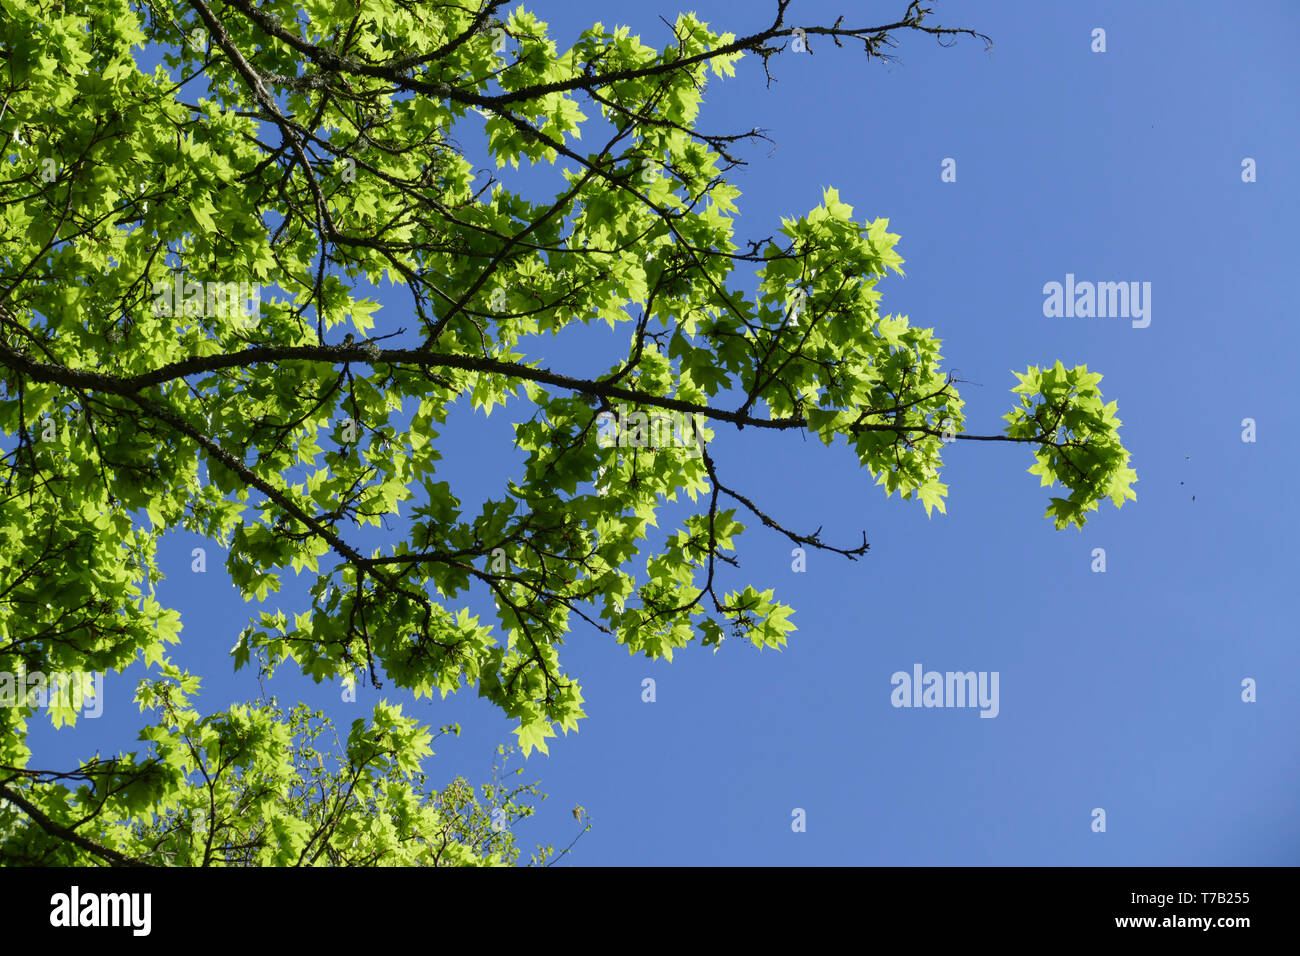 Ahorn Baum, mit frischen Blättern und Trieben, im Frühjahr Stock Photo